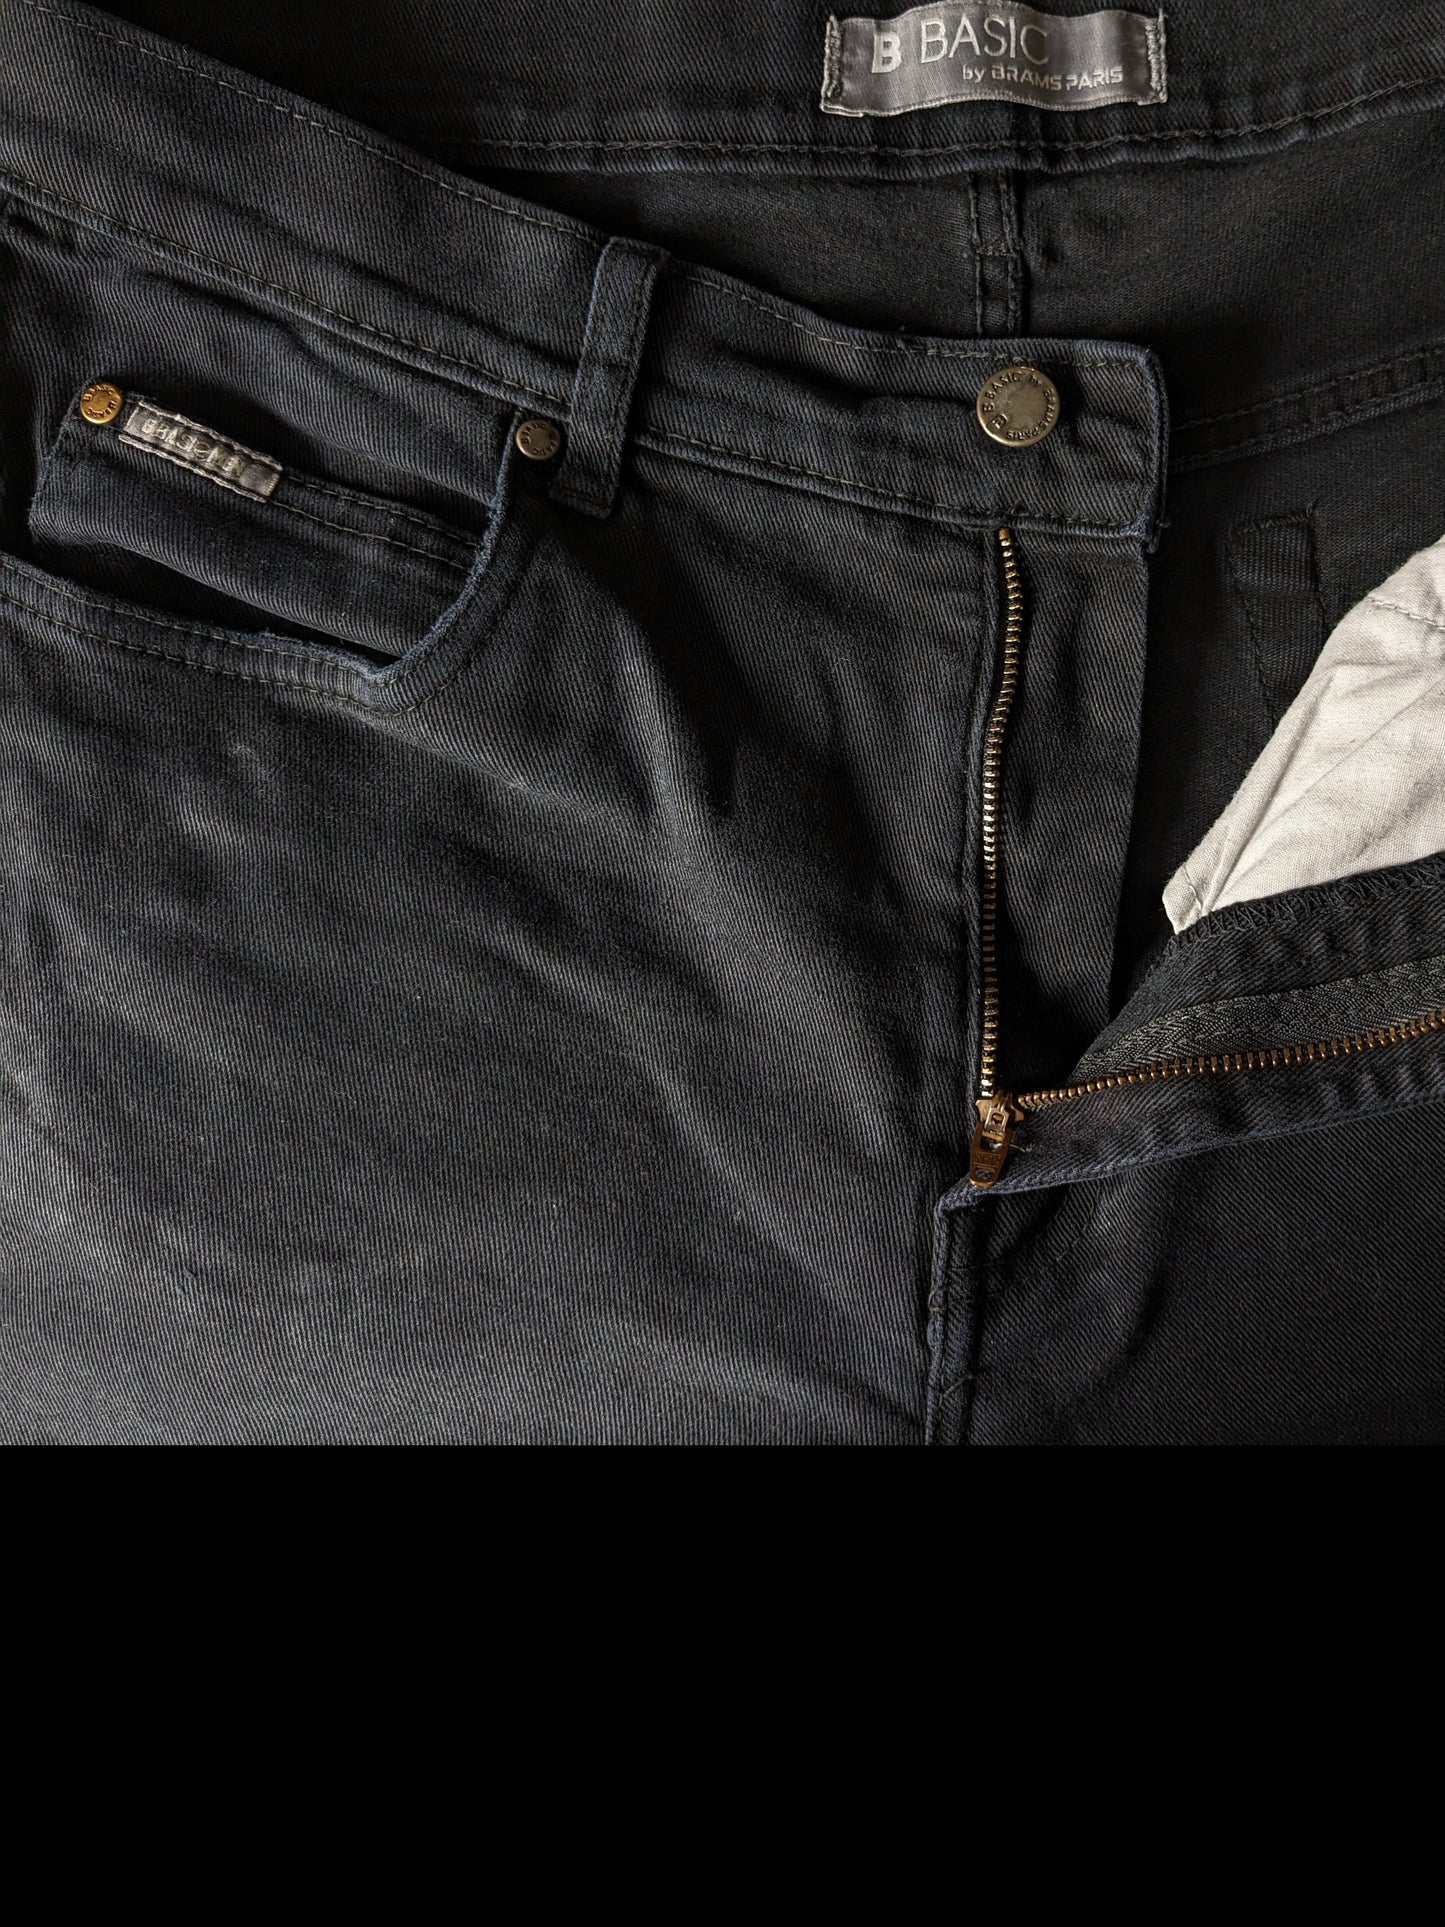 B Basic von Brams Paris Jeans. Schwarz gefärbt. Größe W34 - L34. Komfort fit. strecken.